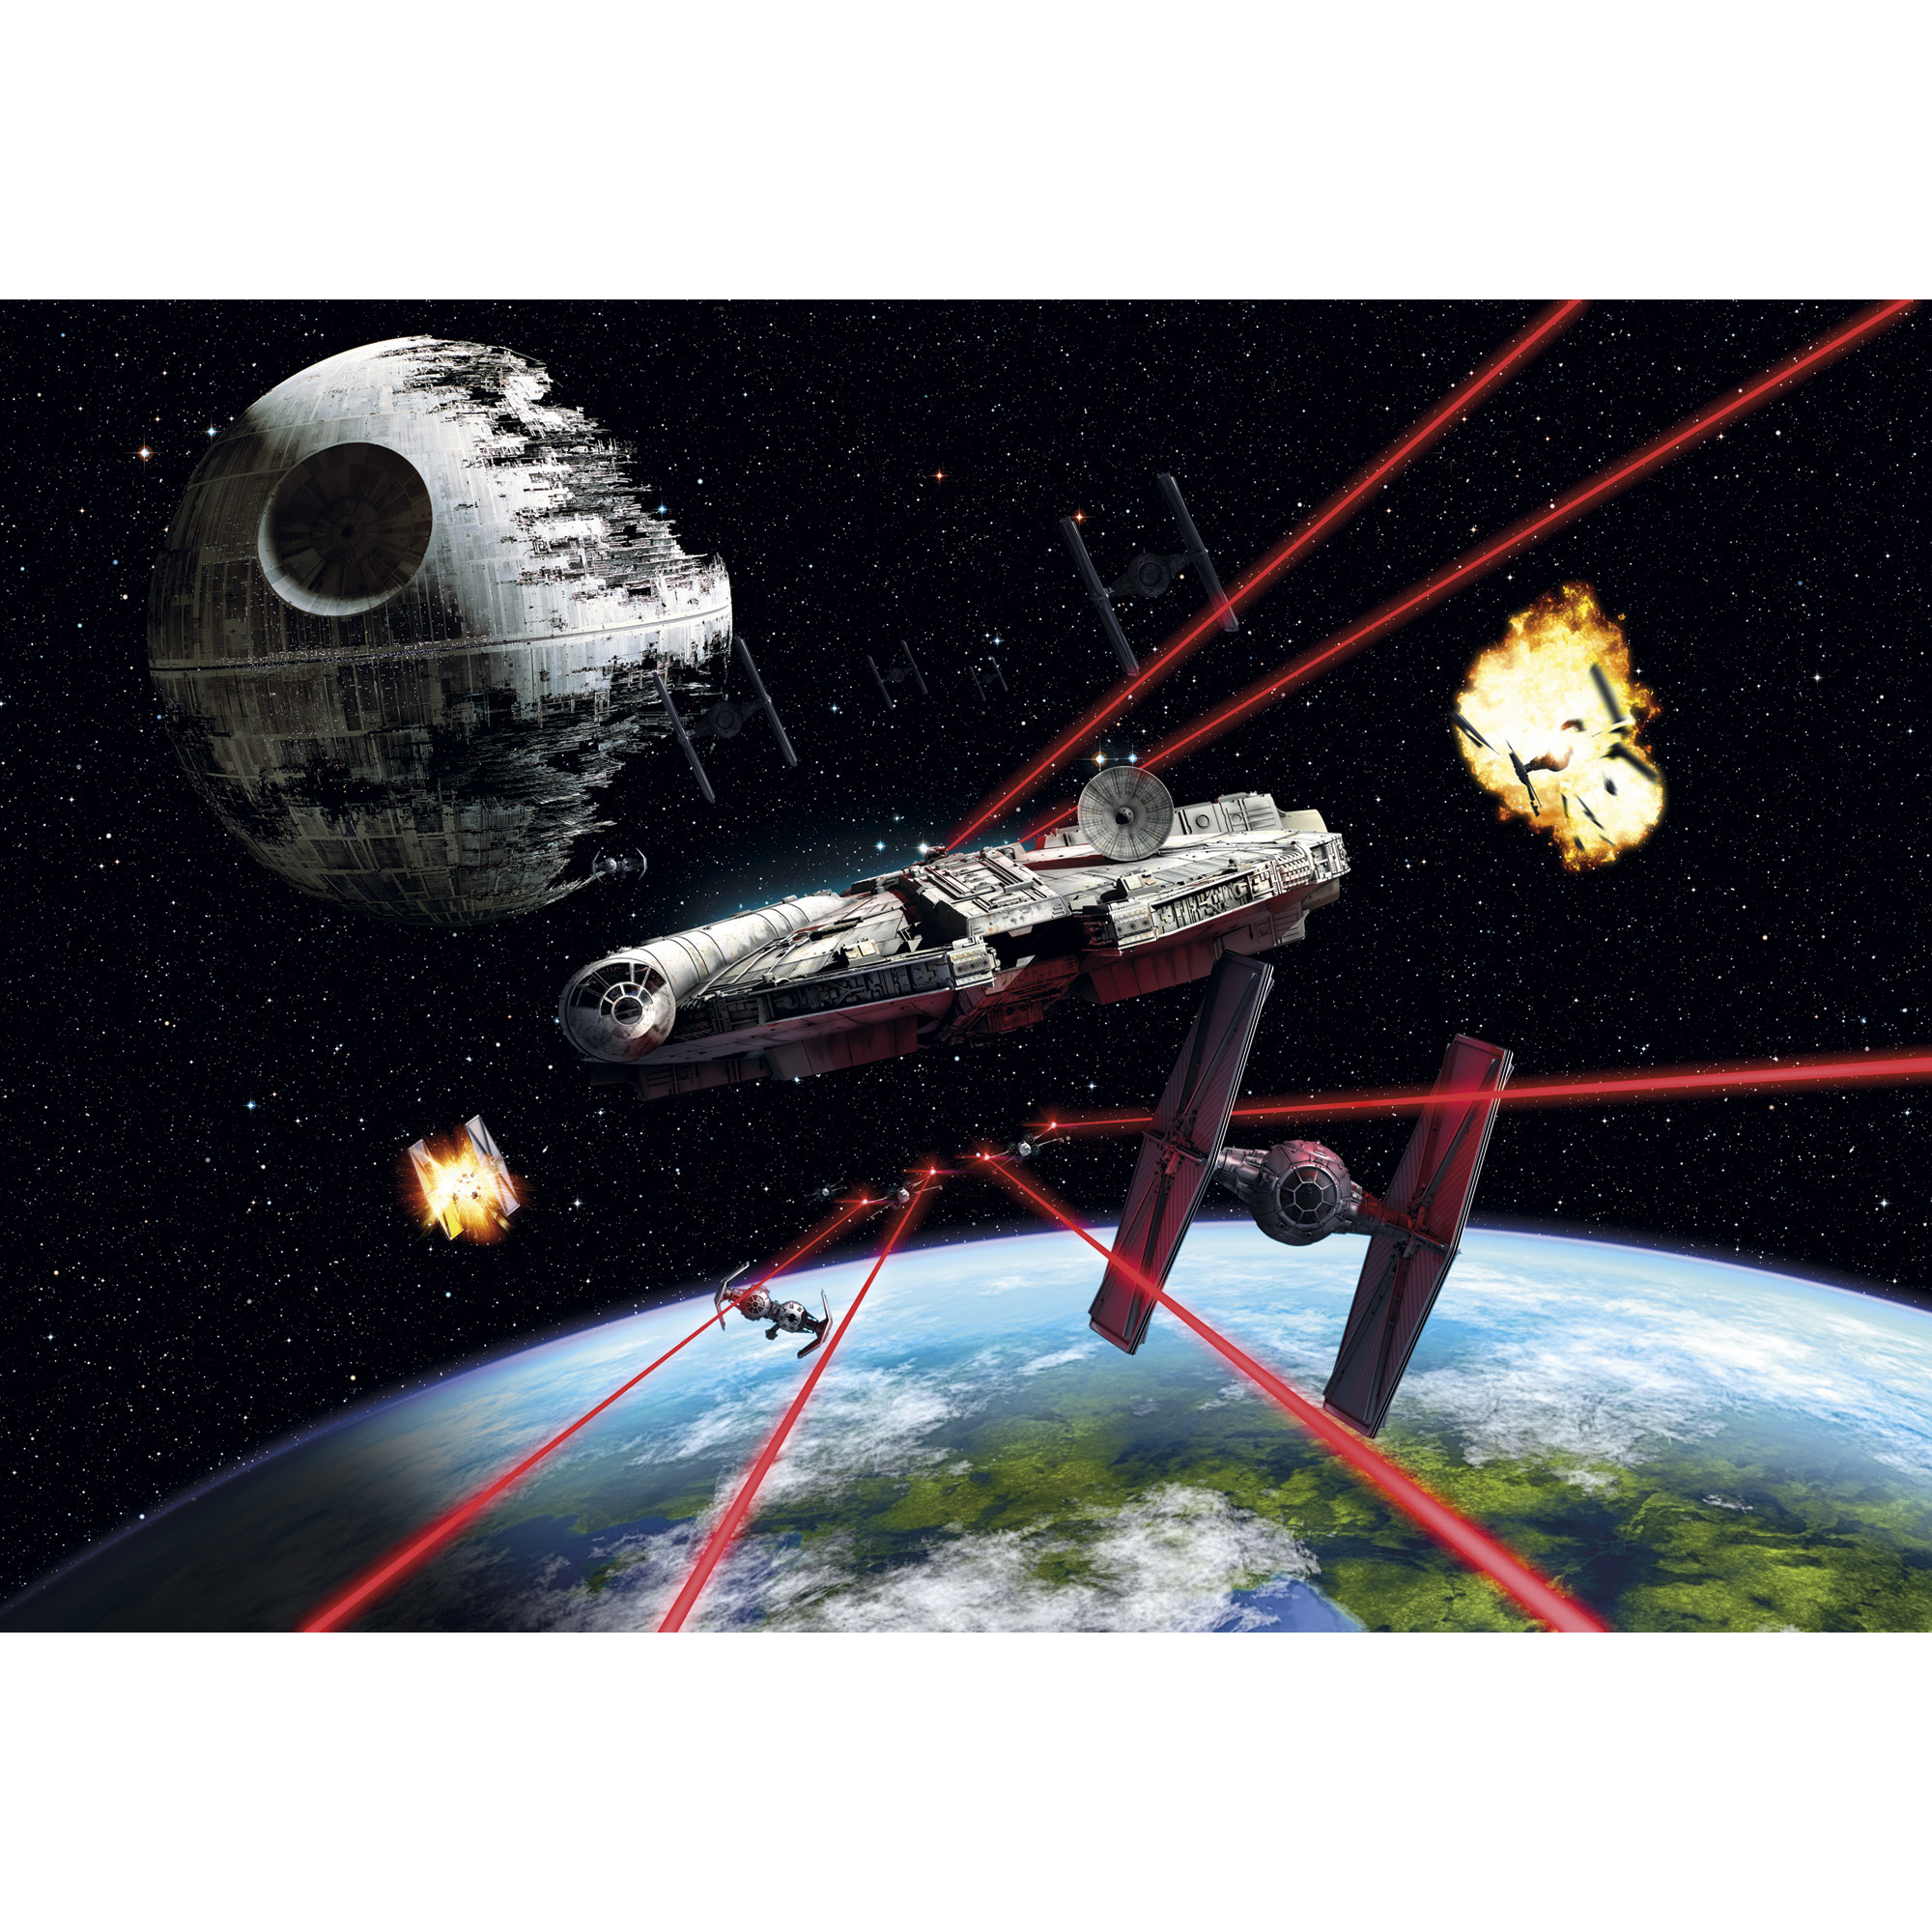 Fototapete 'Star Wars Millennium Falcon' 368 x 254 cm + product picture